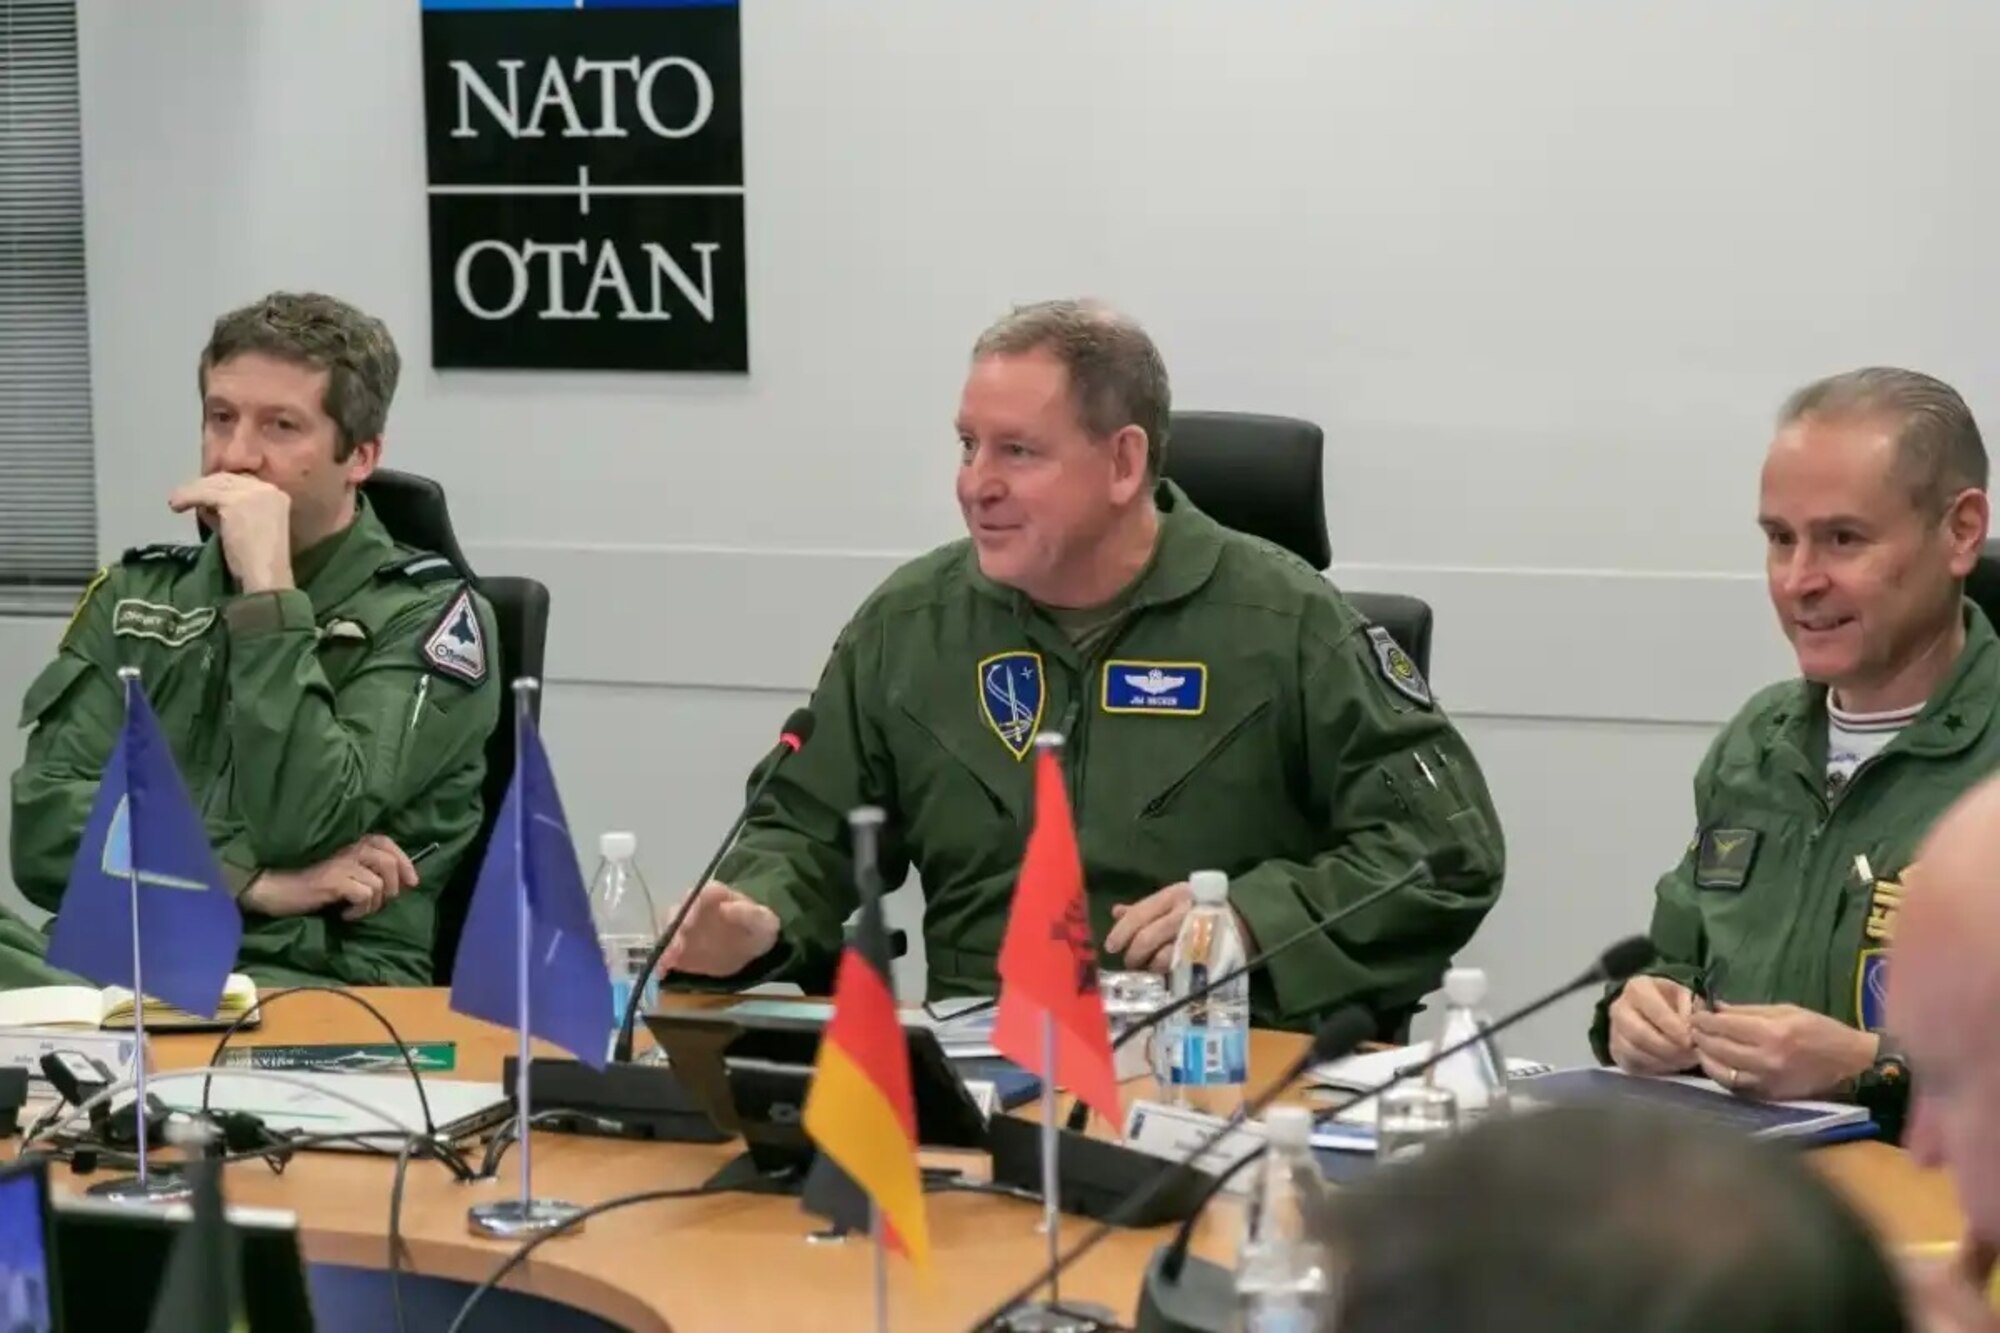 Szefowie Sił Powietrznych NATO dyskutują o tym, jak jeszcze bardziej przyspieszyć integrację Sił Powietrznych i Kosmosu> Siły Powietrzne> Zobacz artykuł